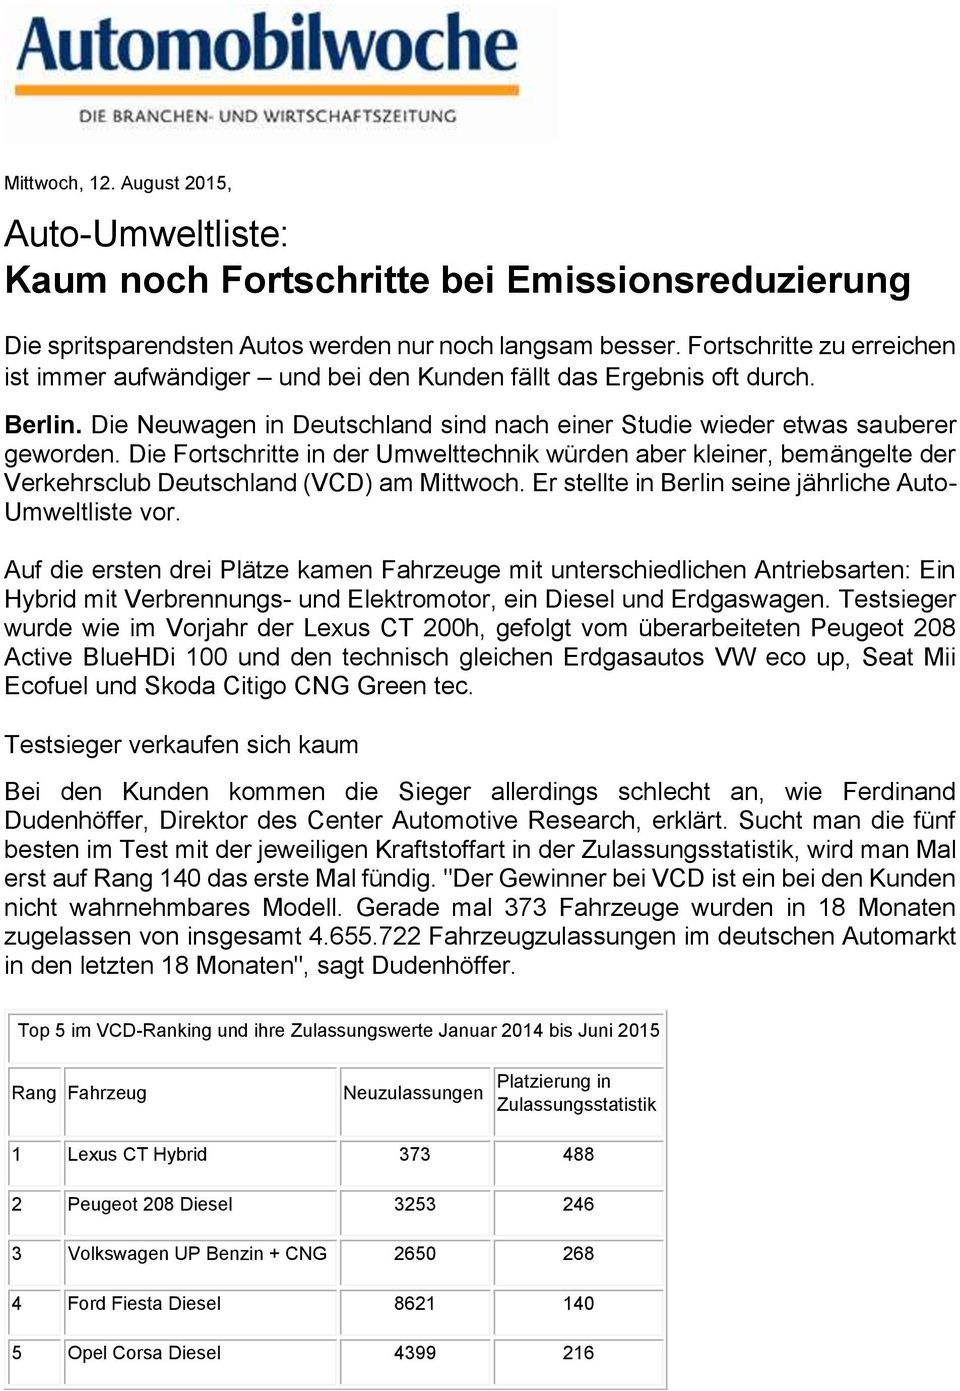 Die Fortschritte in der Umwelttechnik würden aber kleiner, bemängelte der Verkehrsclub Deutschland (VCD) am Mittwoch. Er stellte in Berlin seine jährliche Auto- Umweltliste vor.